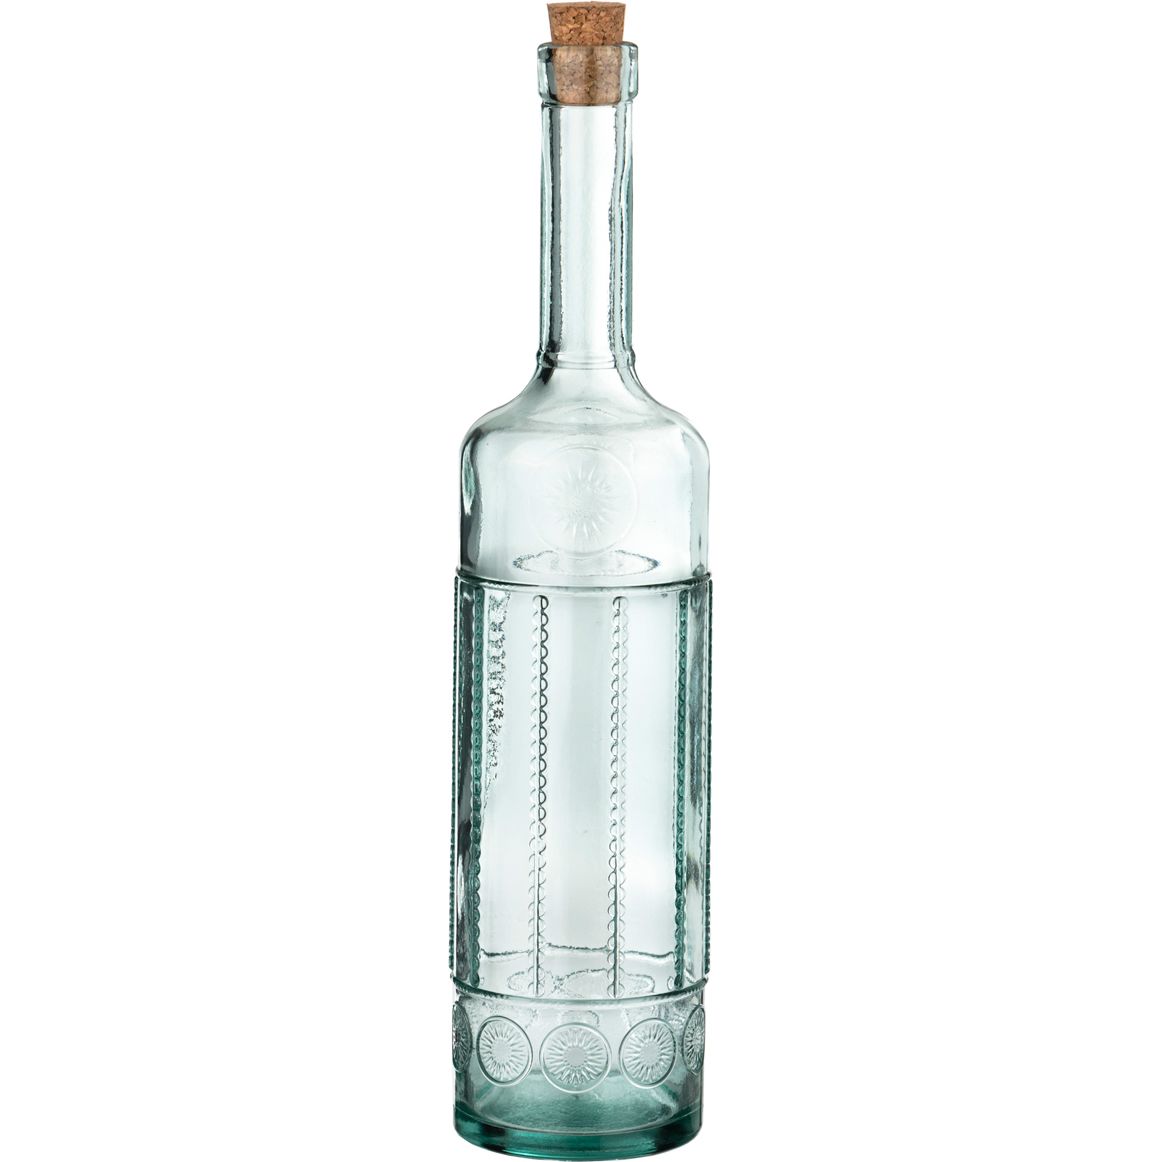 Бутыль с пробкой Toscana, 4 л., 4,3 л, 50 см, Стекло, San Miguel, Испания